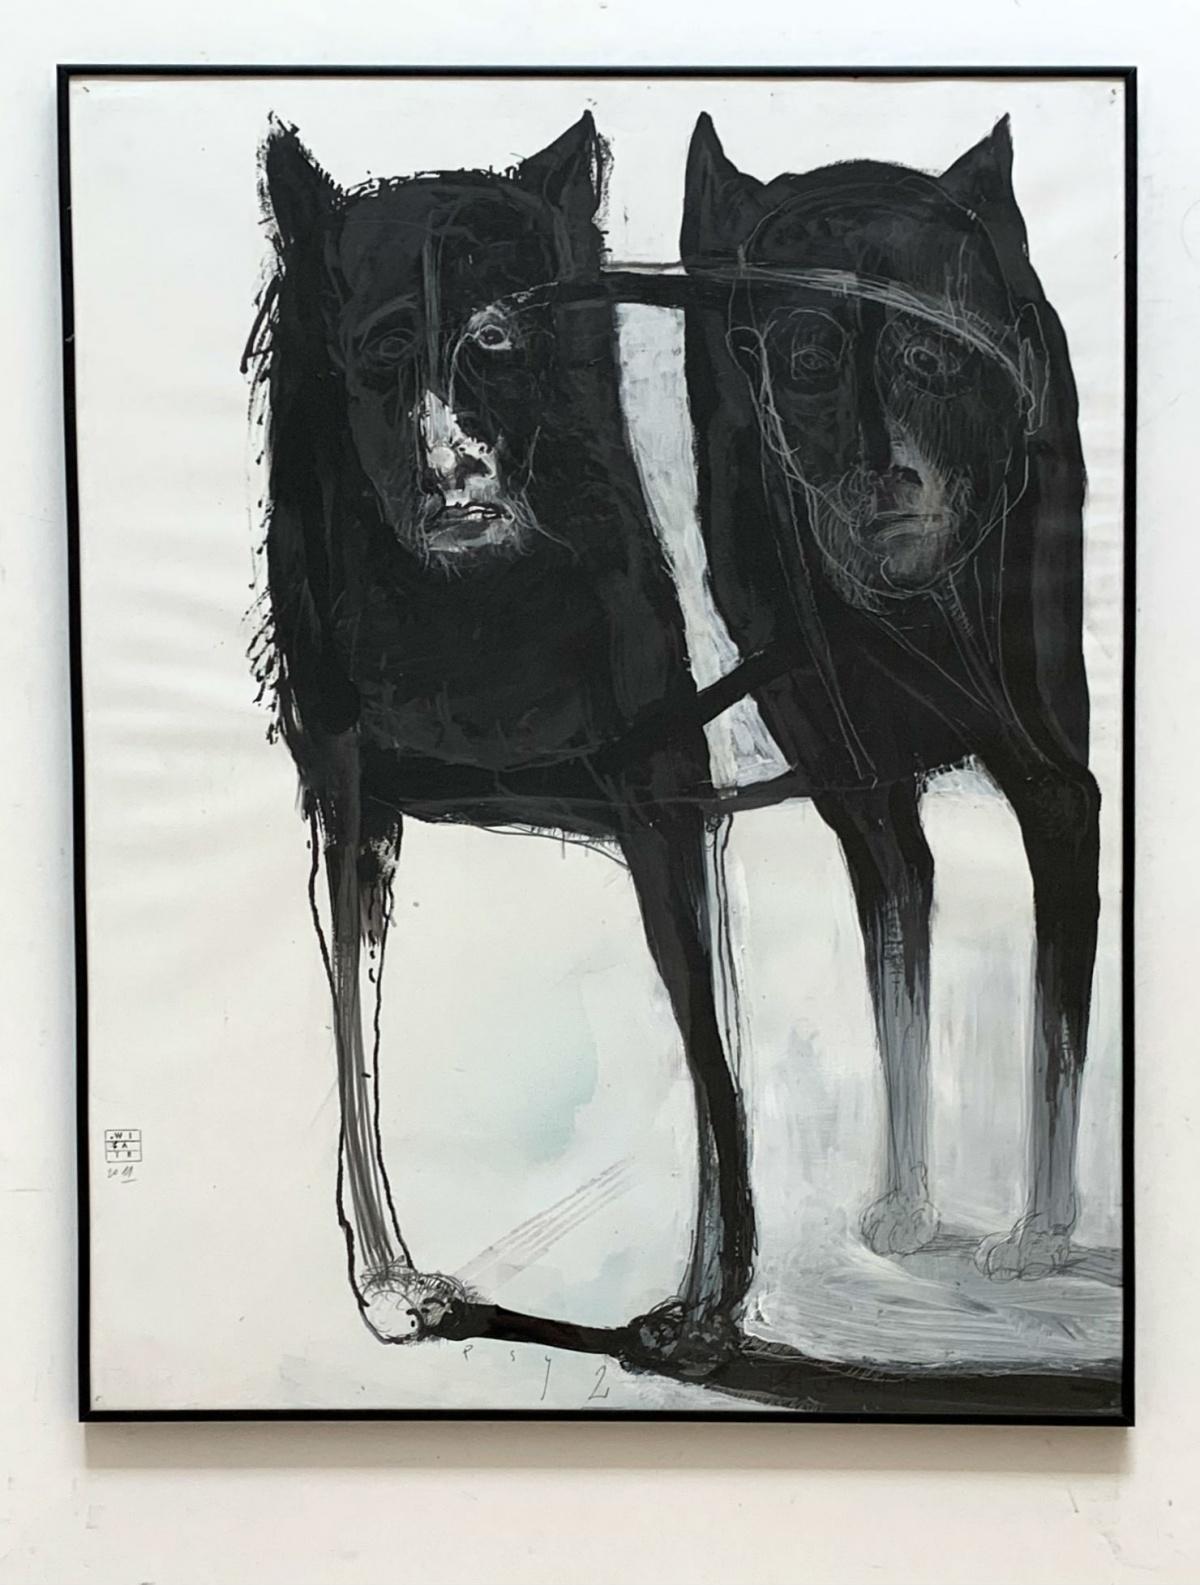 Dessins contemporains « Dogs 2 », dessin figuratif, noir et blanc, artiste polonais - Contemporain Art par Zdzislaw Wiatr